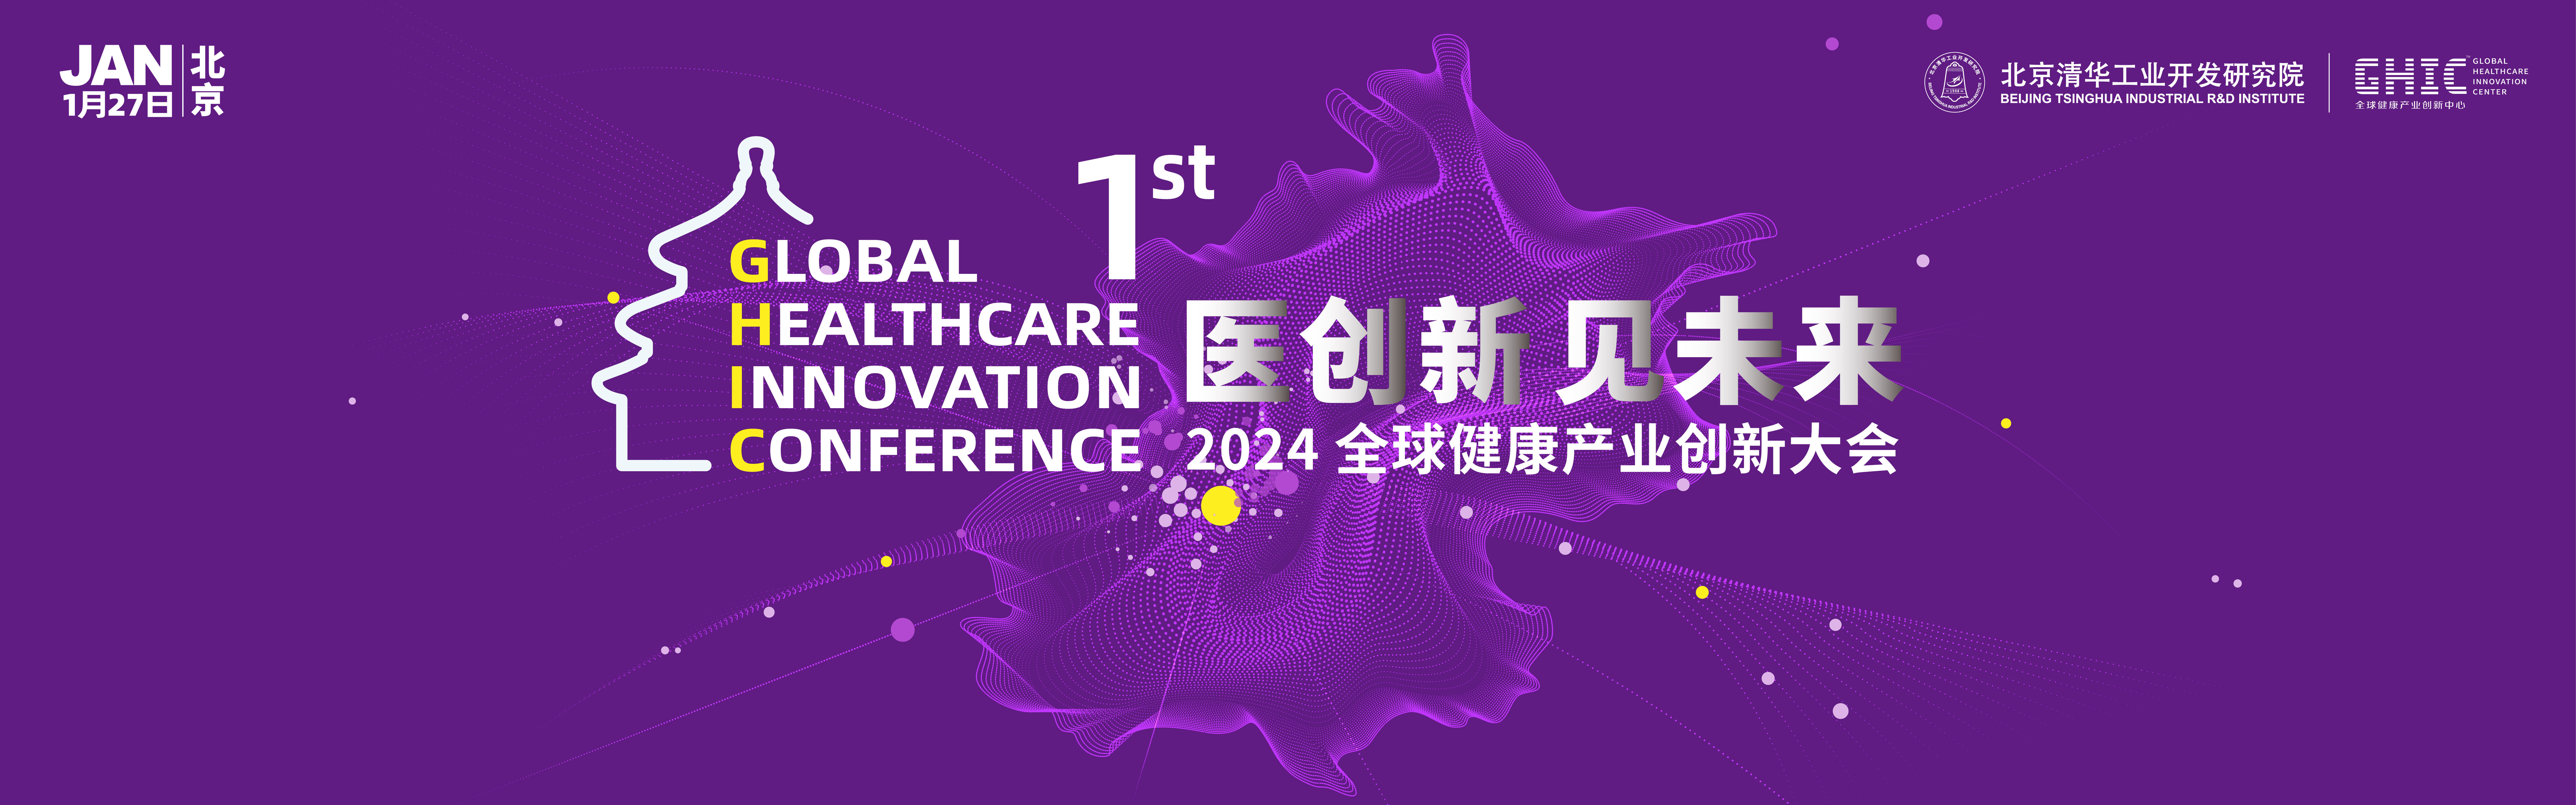 “医创新·见未来” | 首届全球健康产业创新大会邀请您参加！